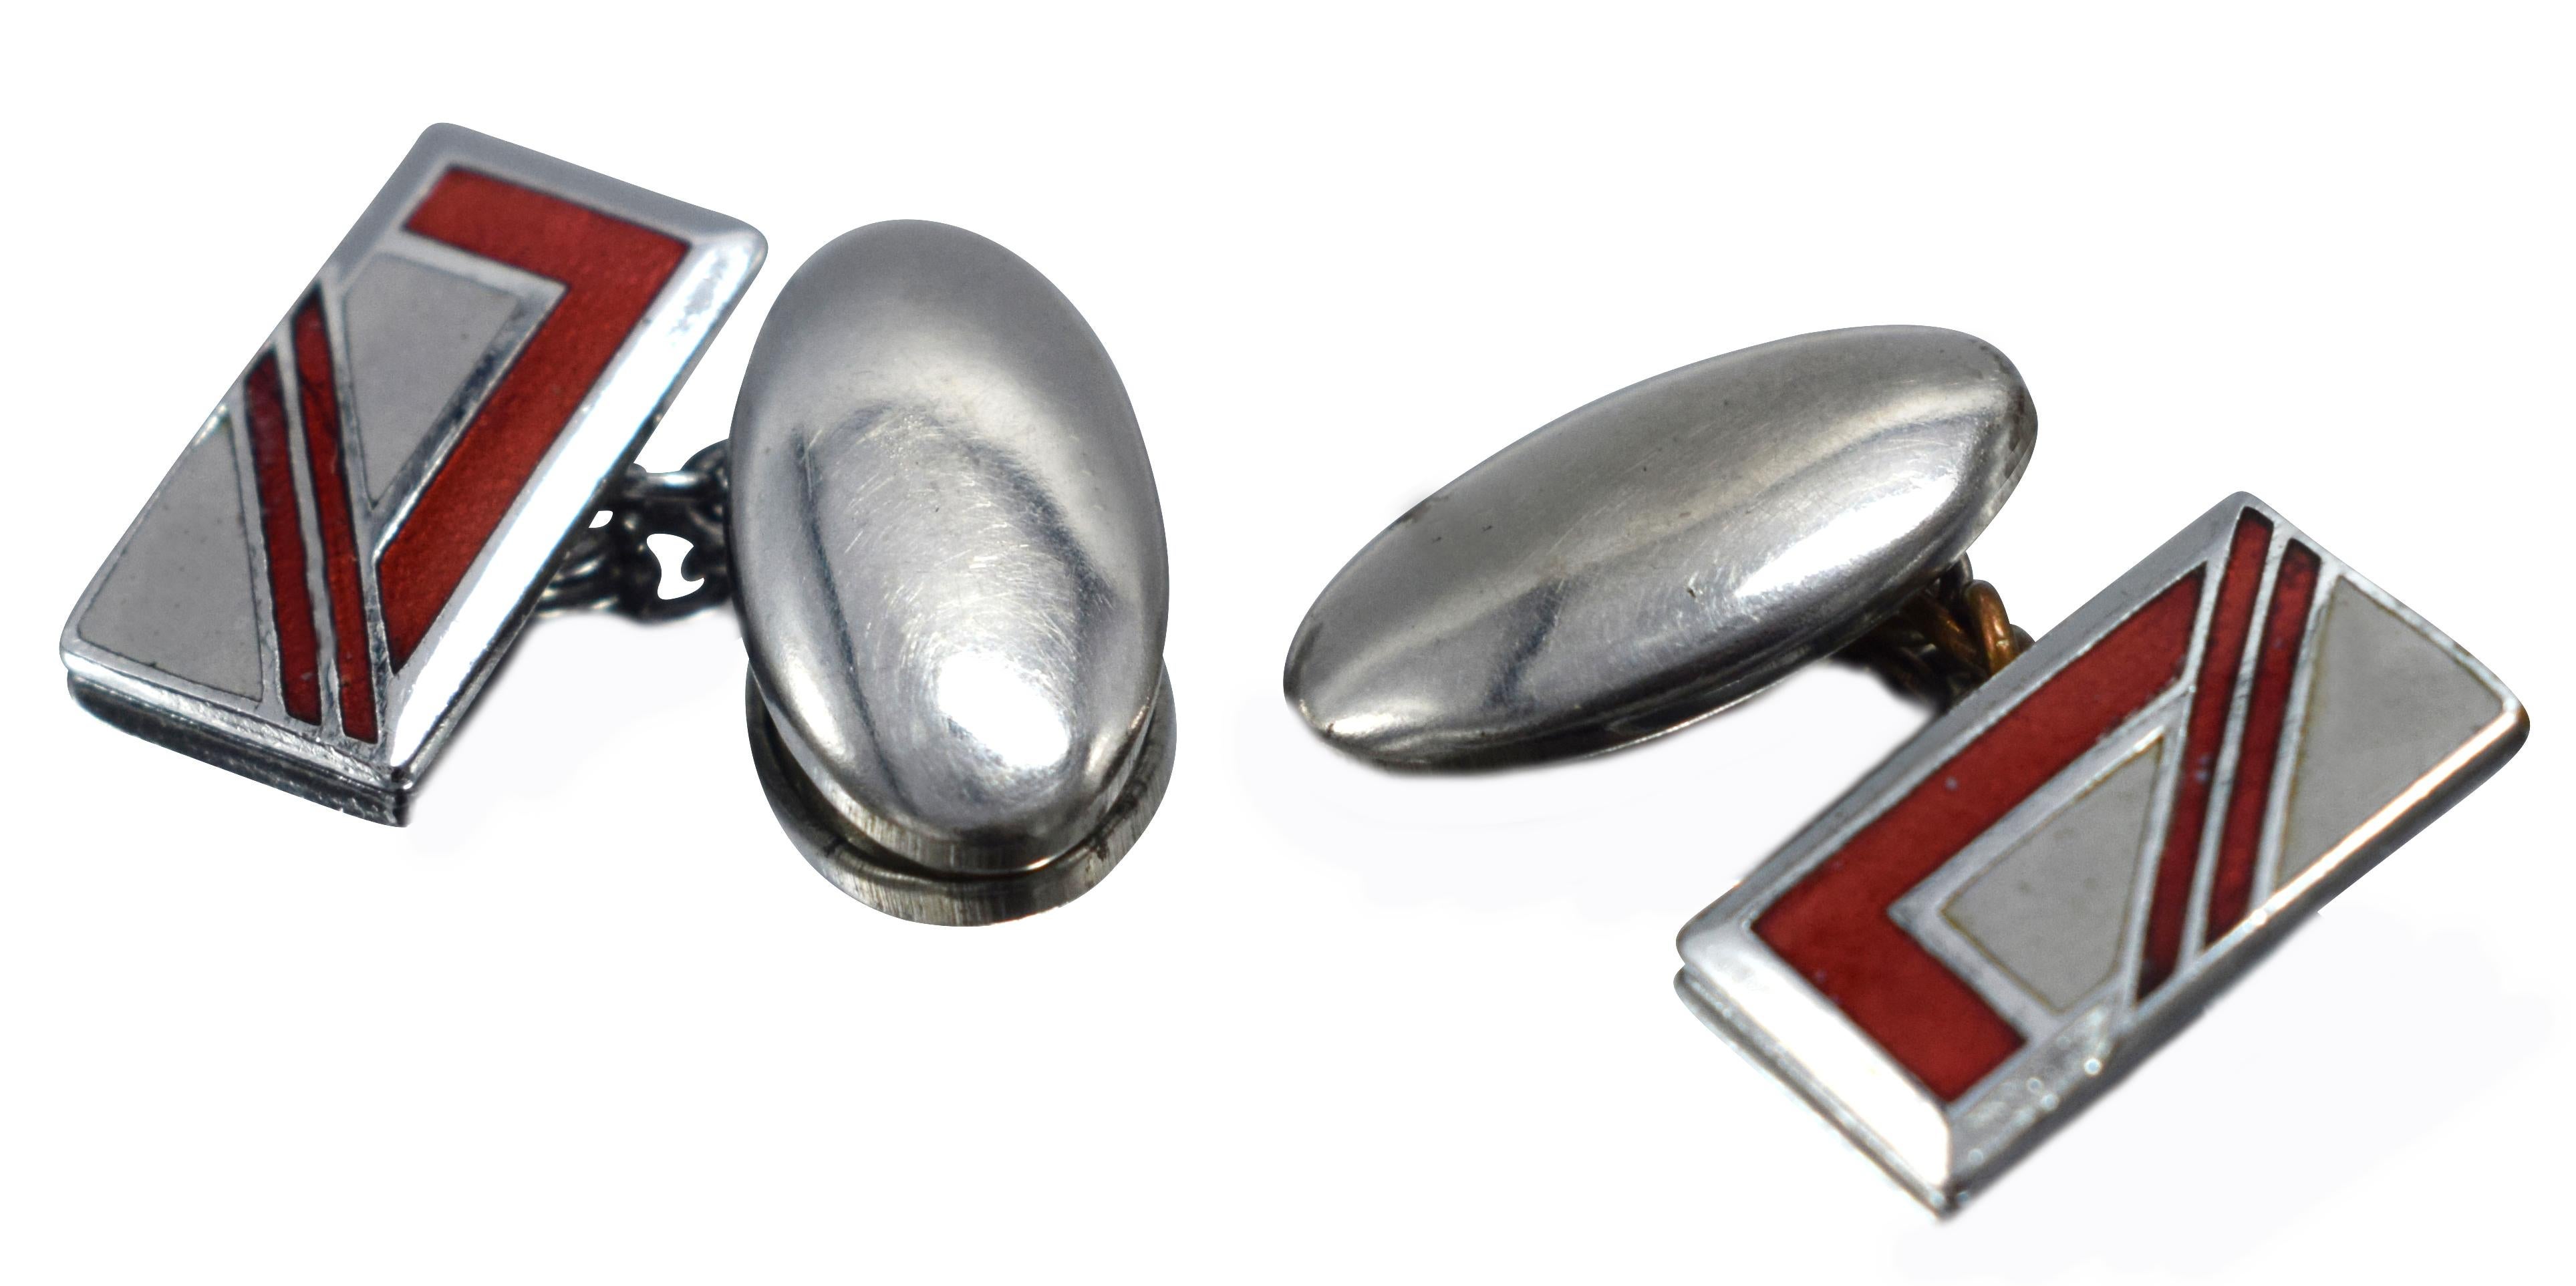 Fabuleuse paire de boutons de manchette Art Déco assortis pour hommes, avec un superbe motif géométrique. Le métal argenté avec une décoration en émail rouge et datant des années 1930 rend ces maillons très distinctifs et élégants. Idéal pour le